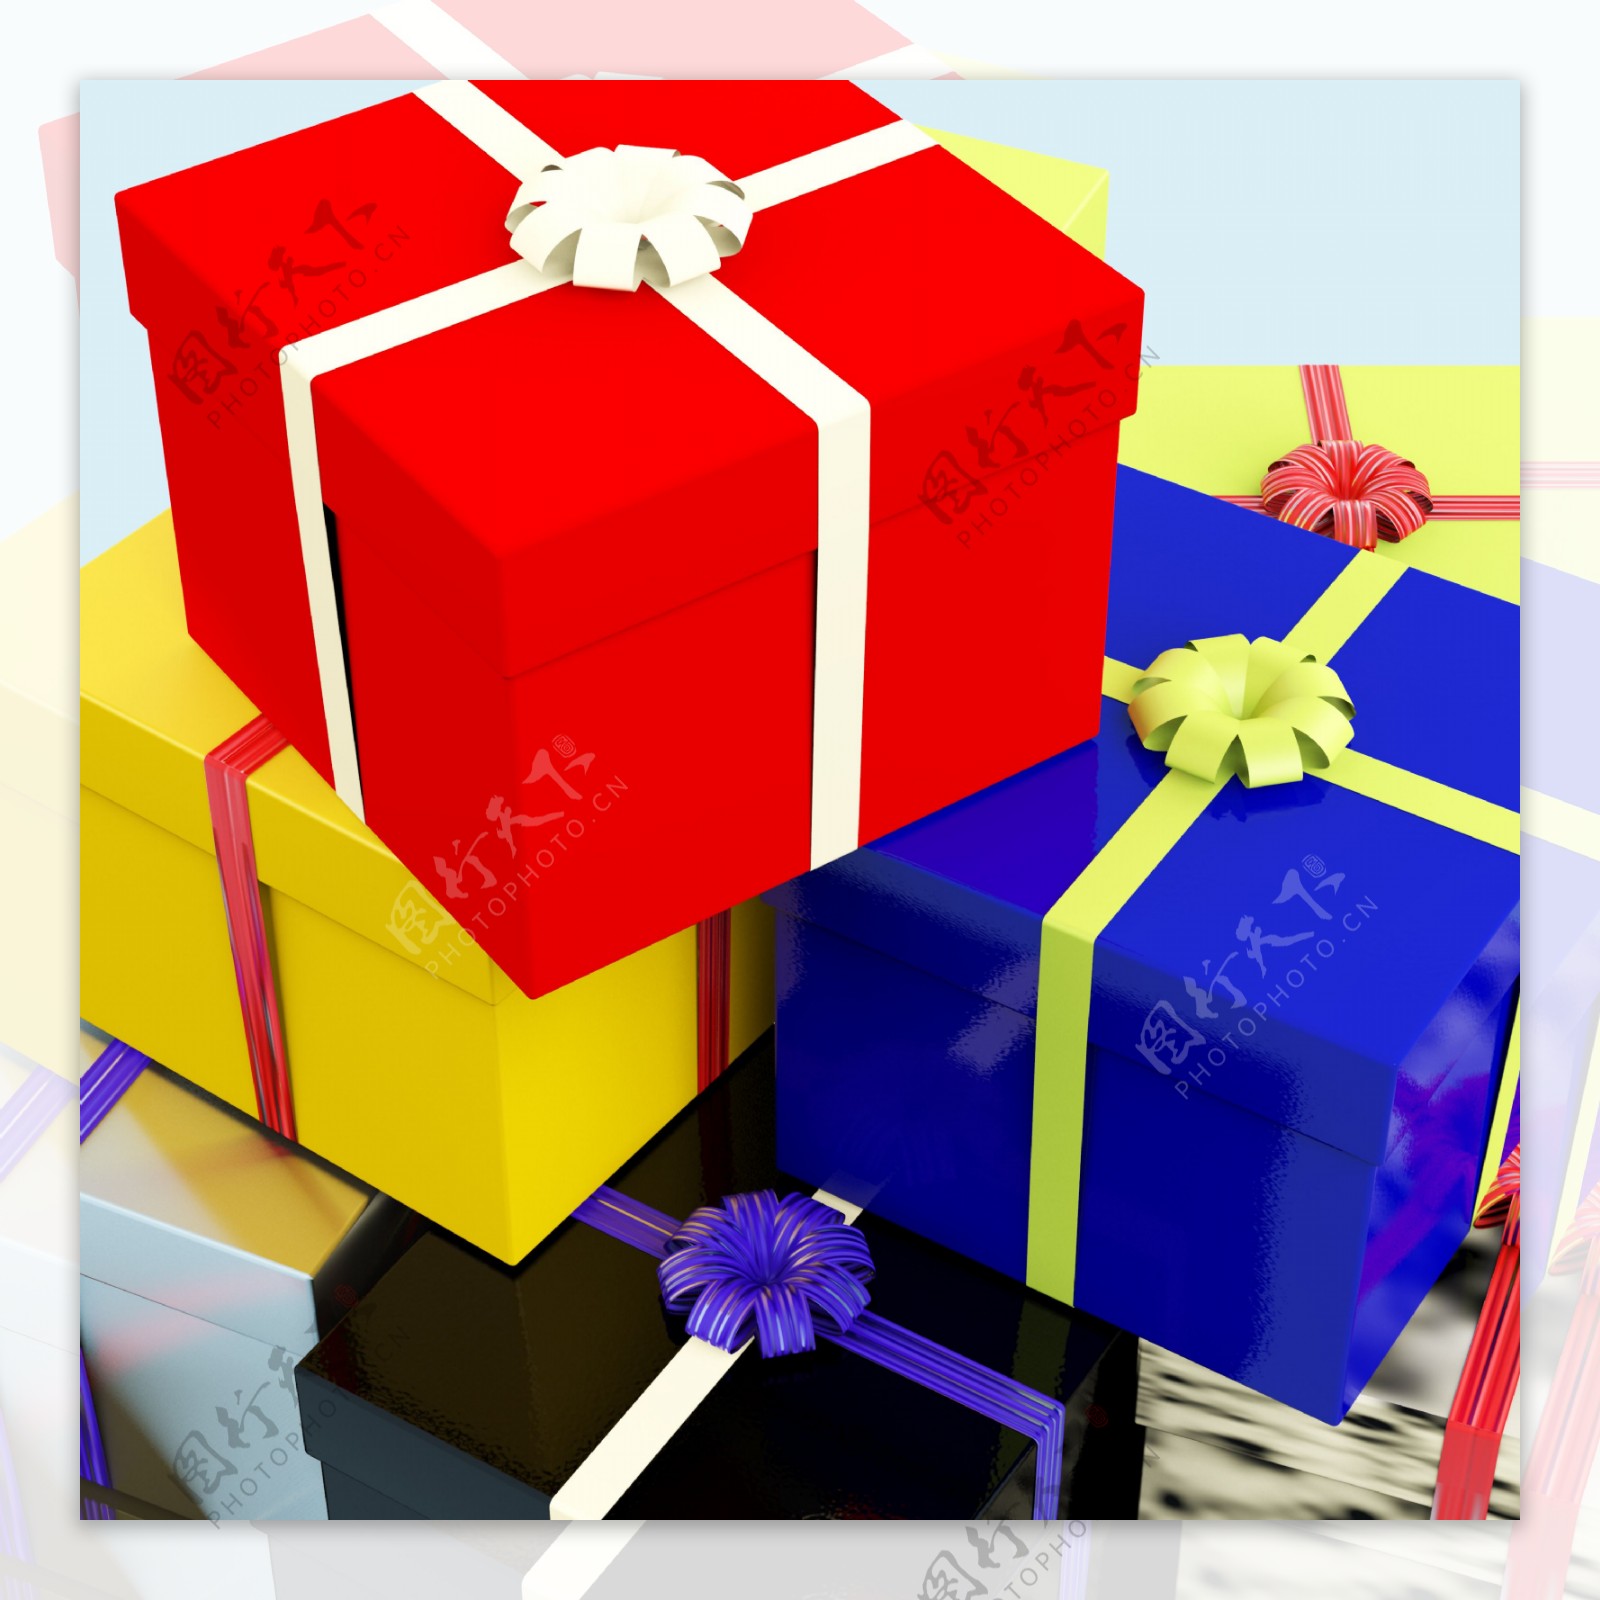 彩色礼品盒为家人或朋友的礼物